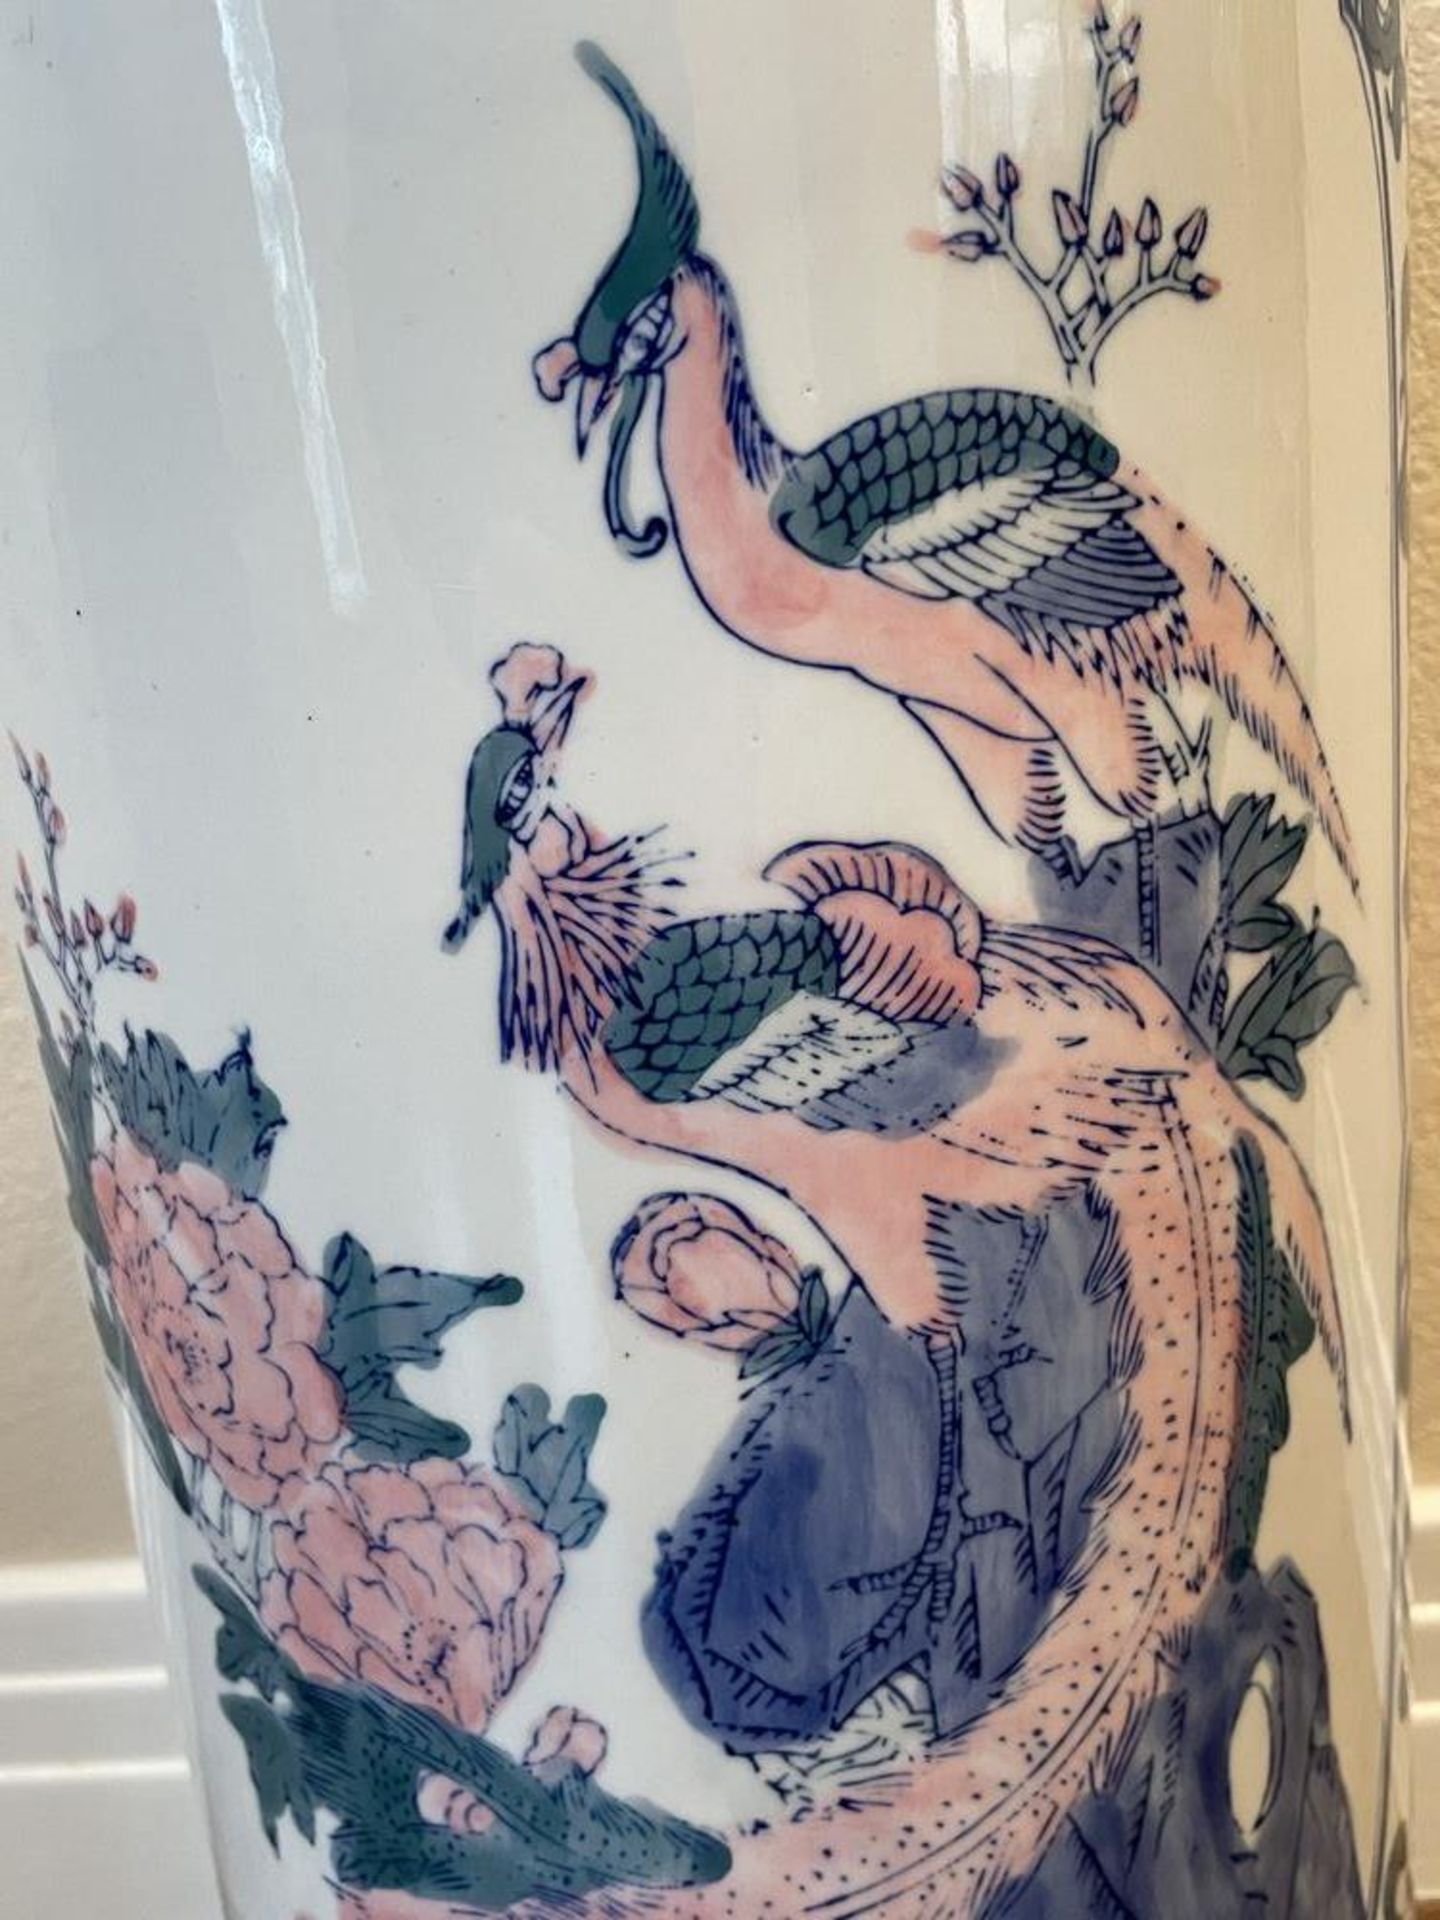 Large East Asian Porceline Planter/Vase/Pot with bird design - 21" x 9" - Image 3 of 5